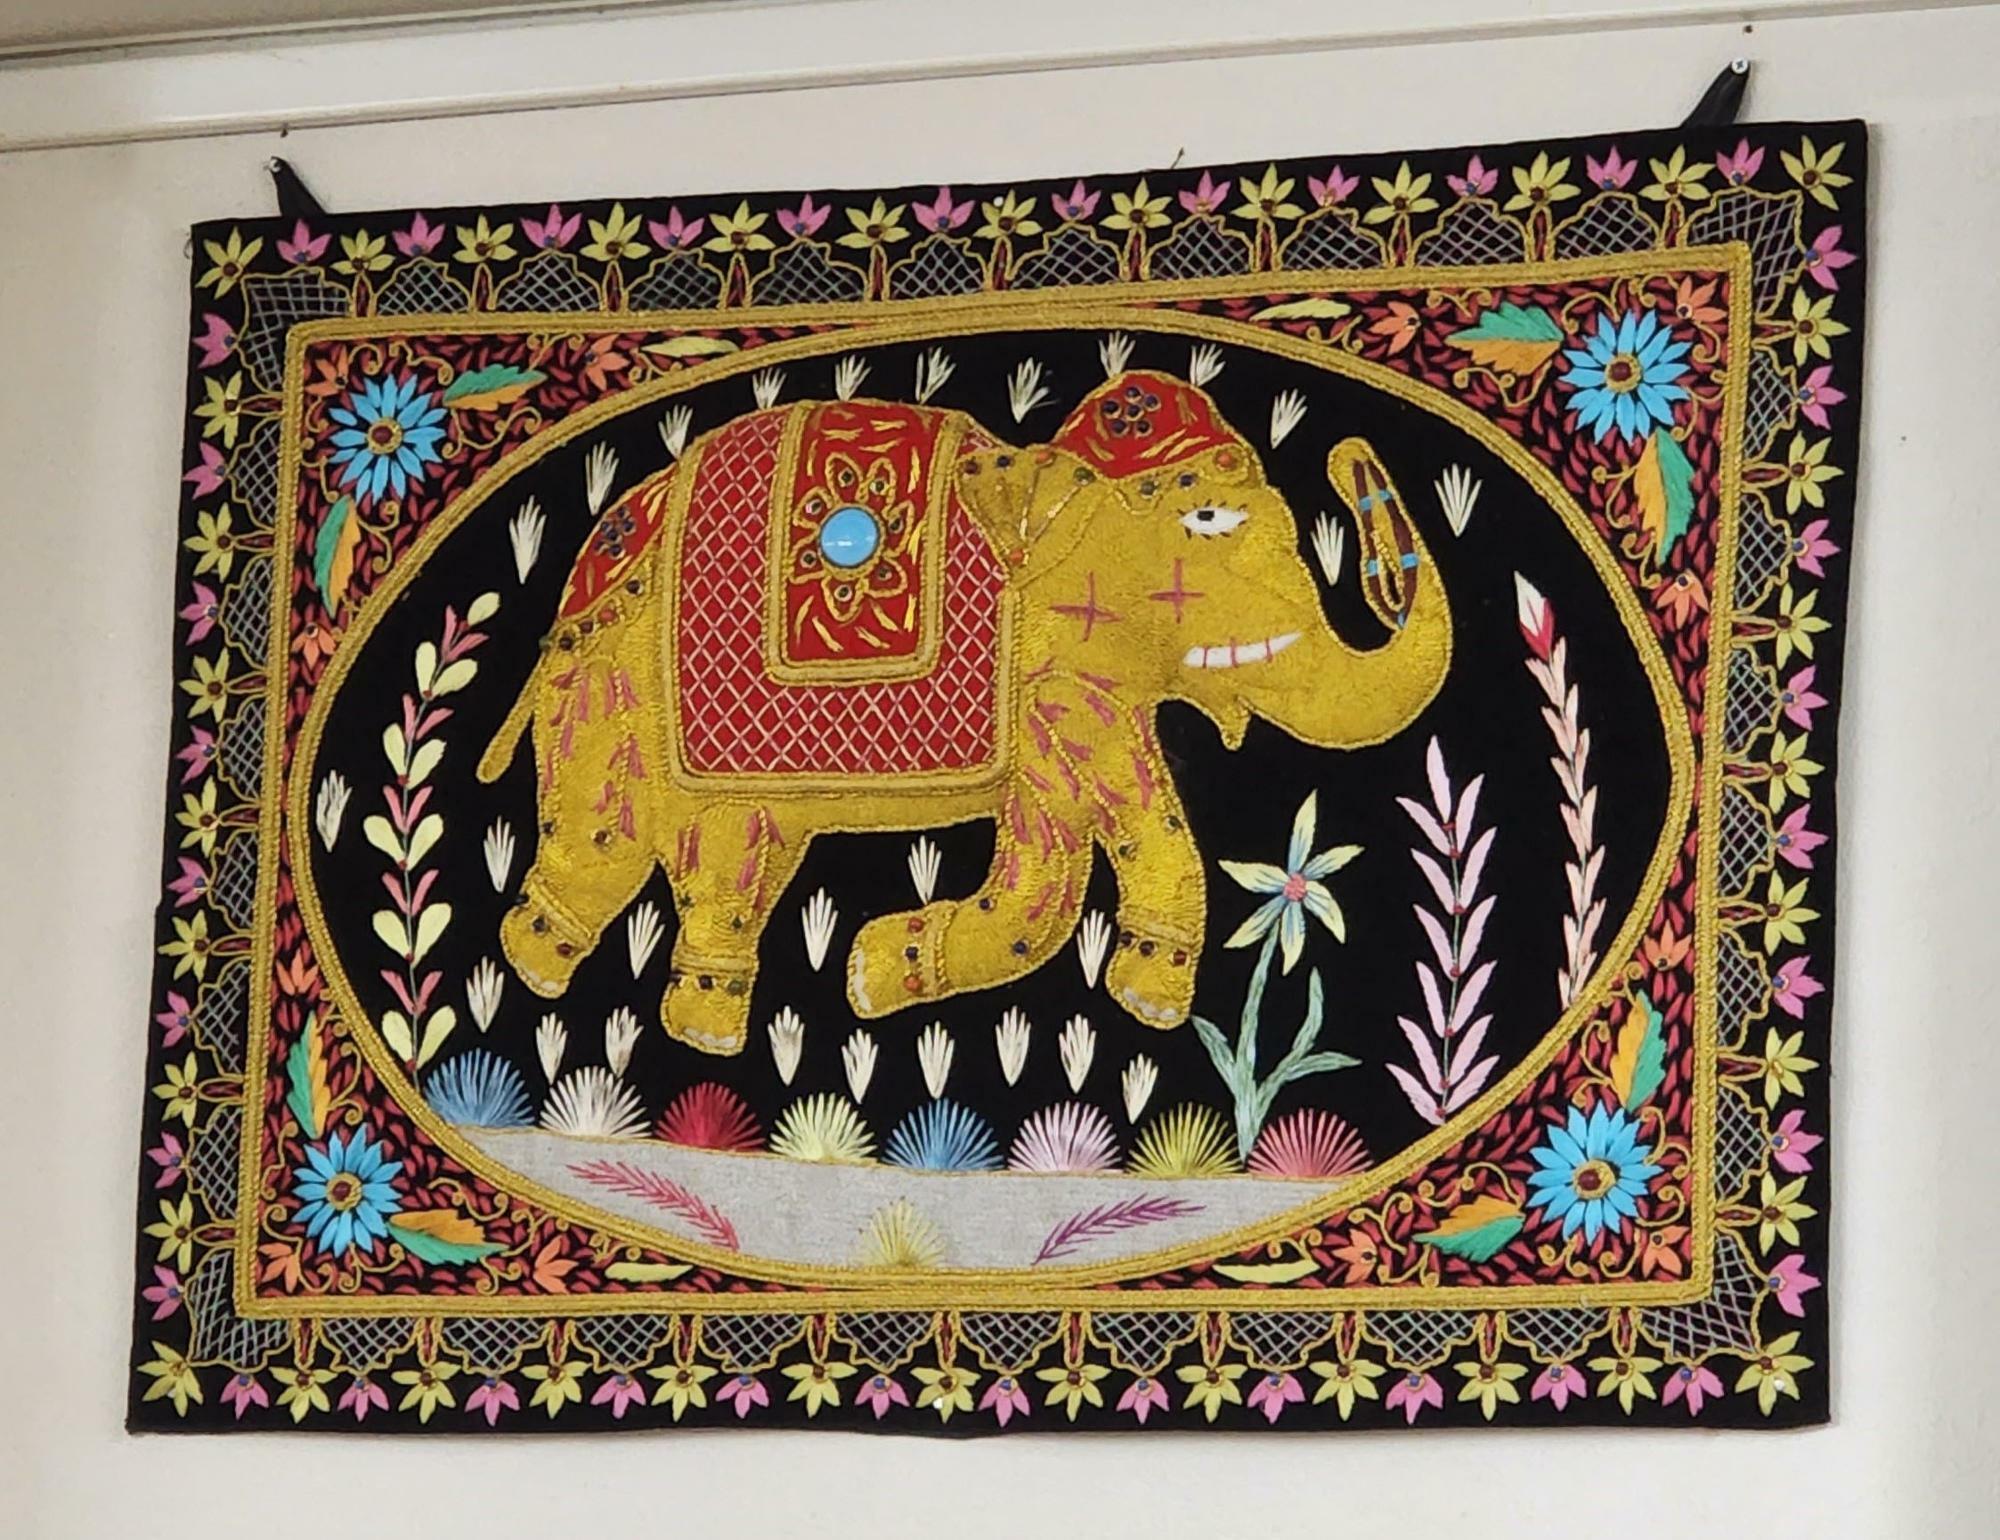 「スープカレー&ネパールカレー イチゴ 国府店」店内の装飾品。